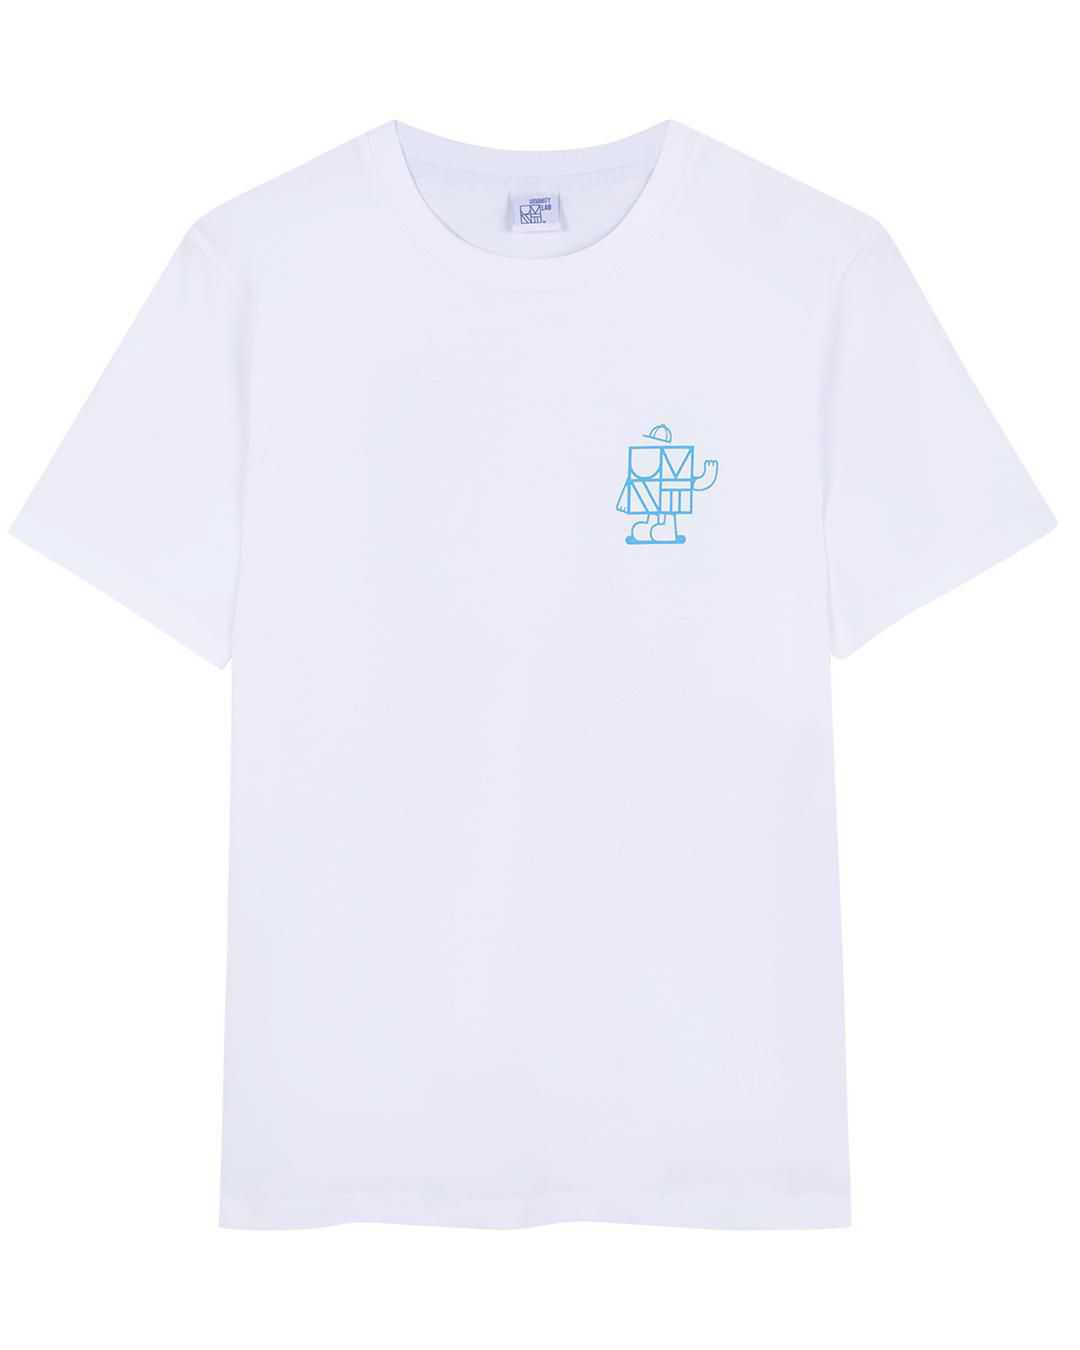 Camiseta blanca con estampado multicolor "Urvanity por Yubia"